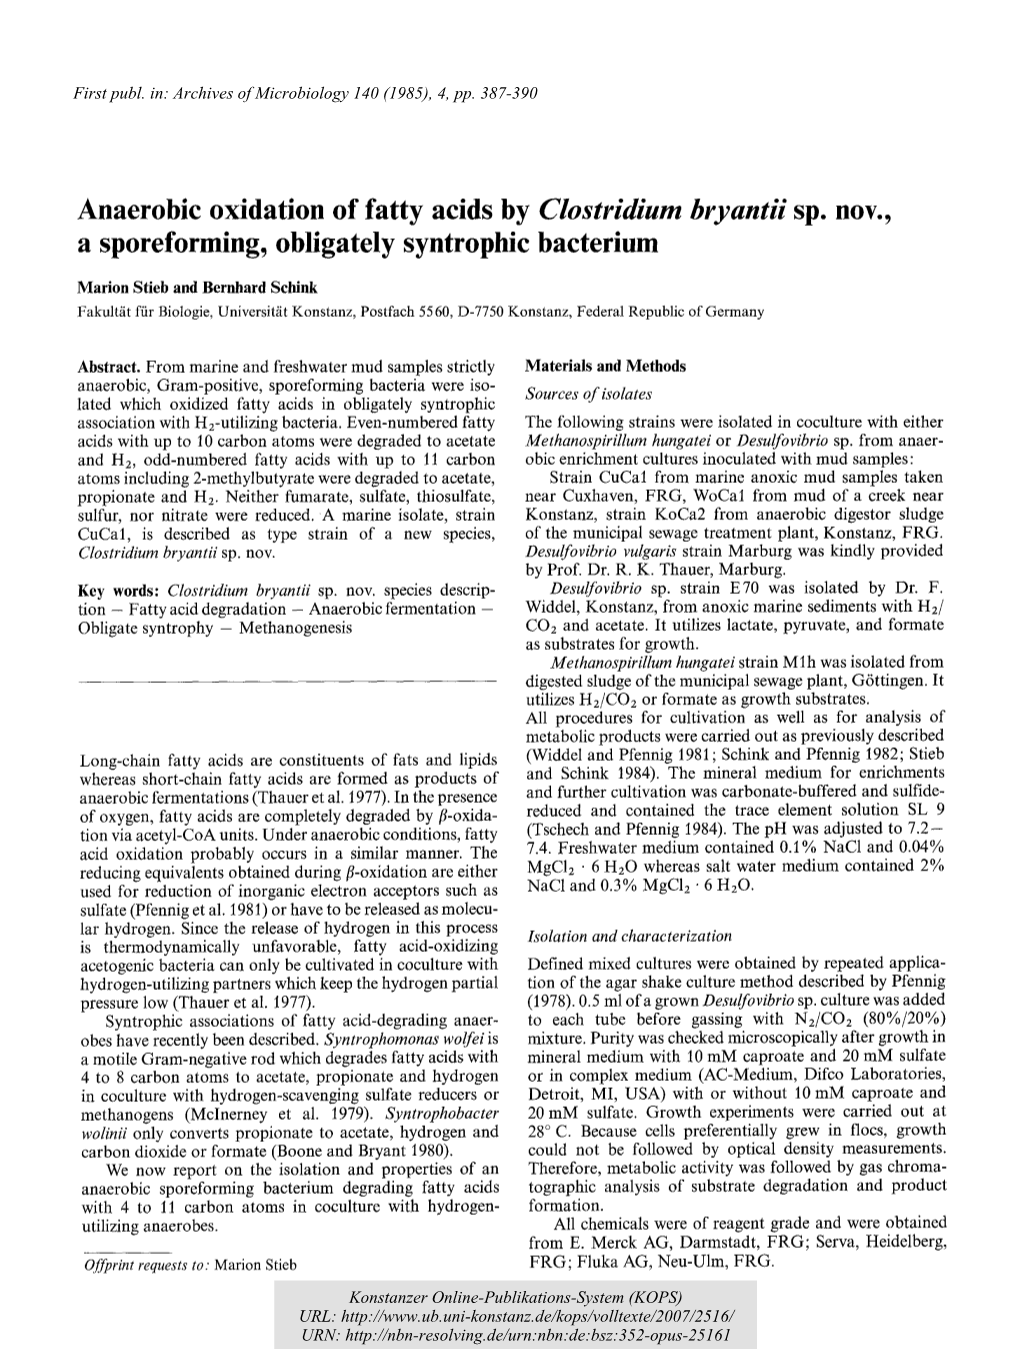 Anaerobic Oxidation of Fatty Acids by Clostridium Bryantii Nov., A